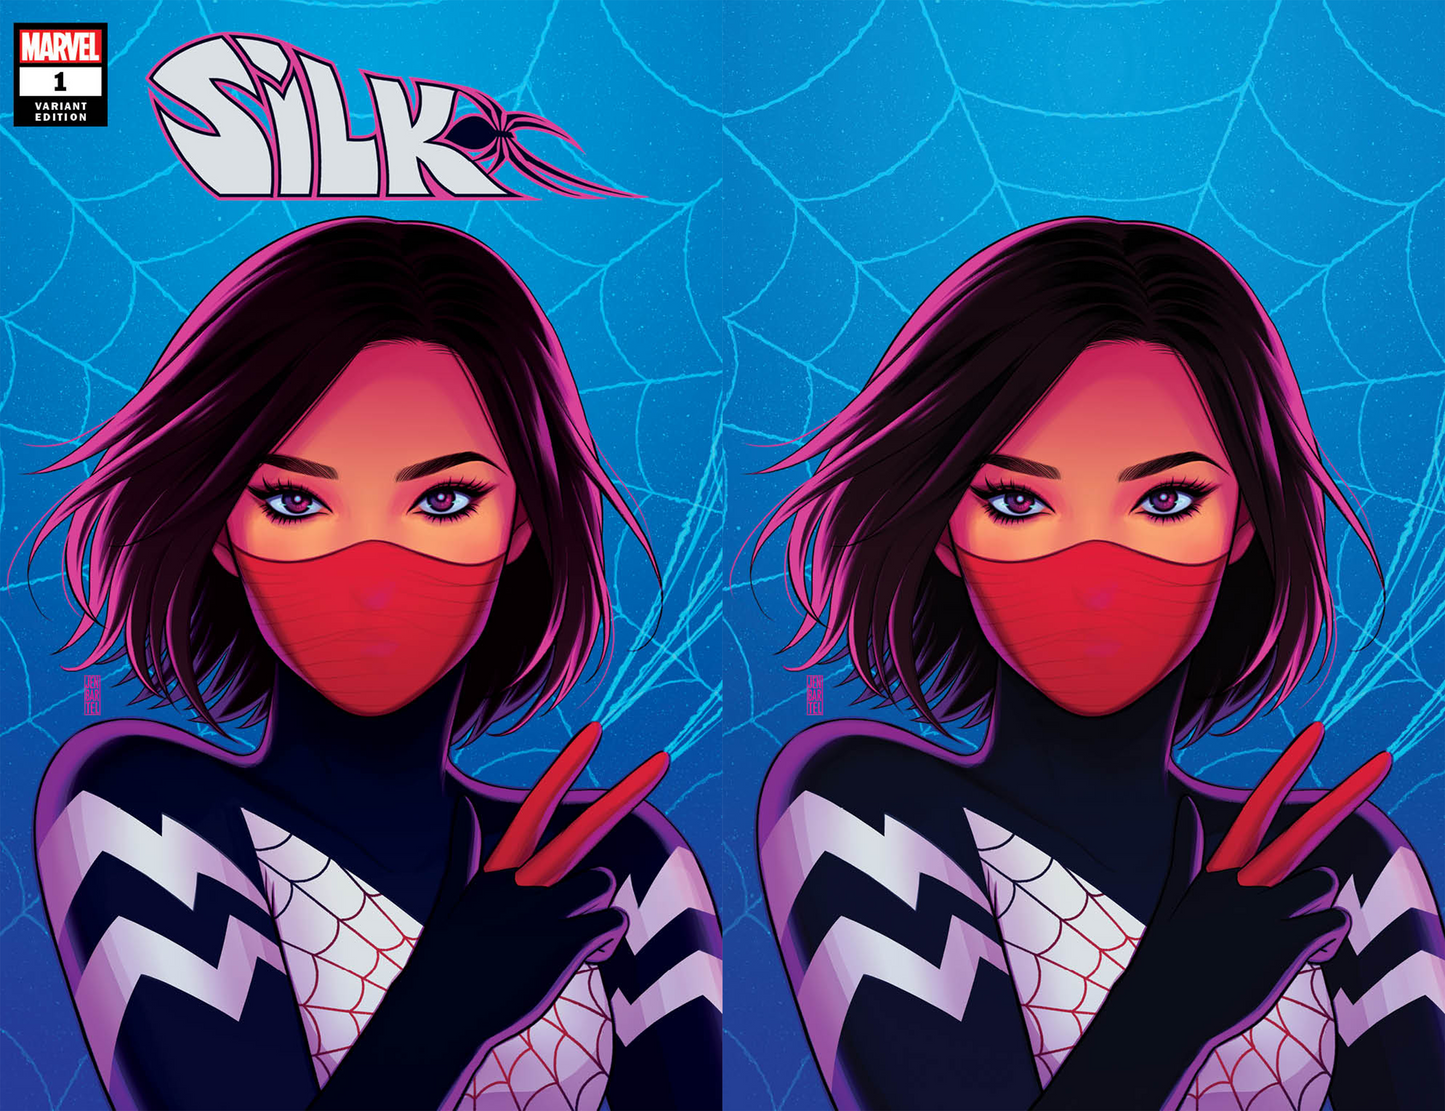 Silk #1 A (Of 5) Jen Bartel Variant (04/07/2021) Marvel